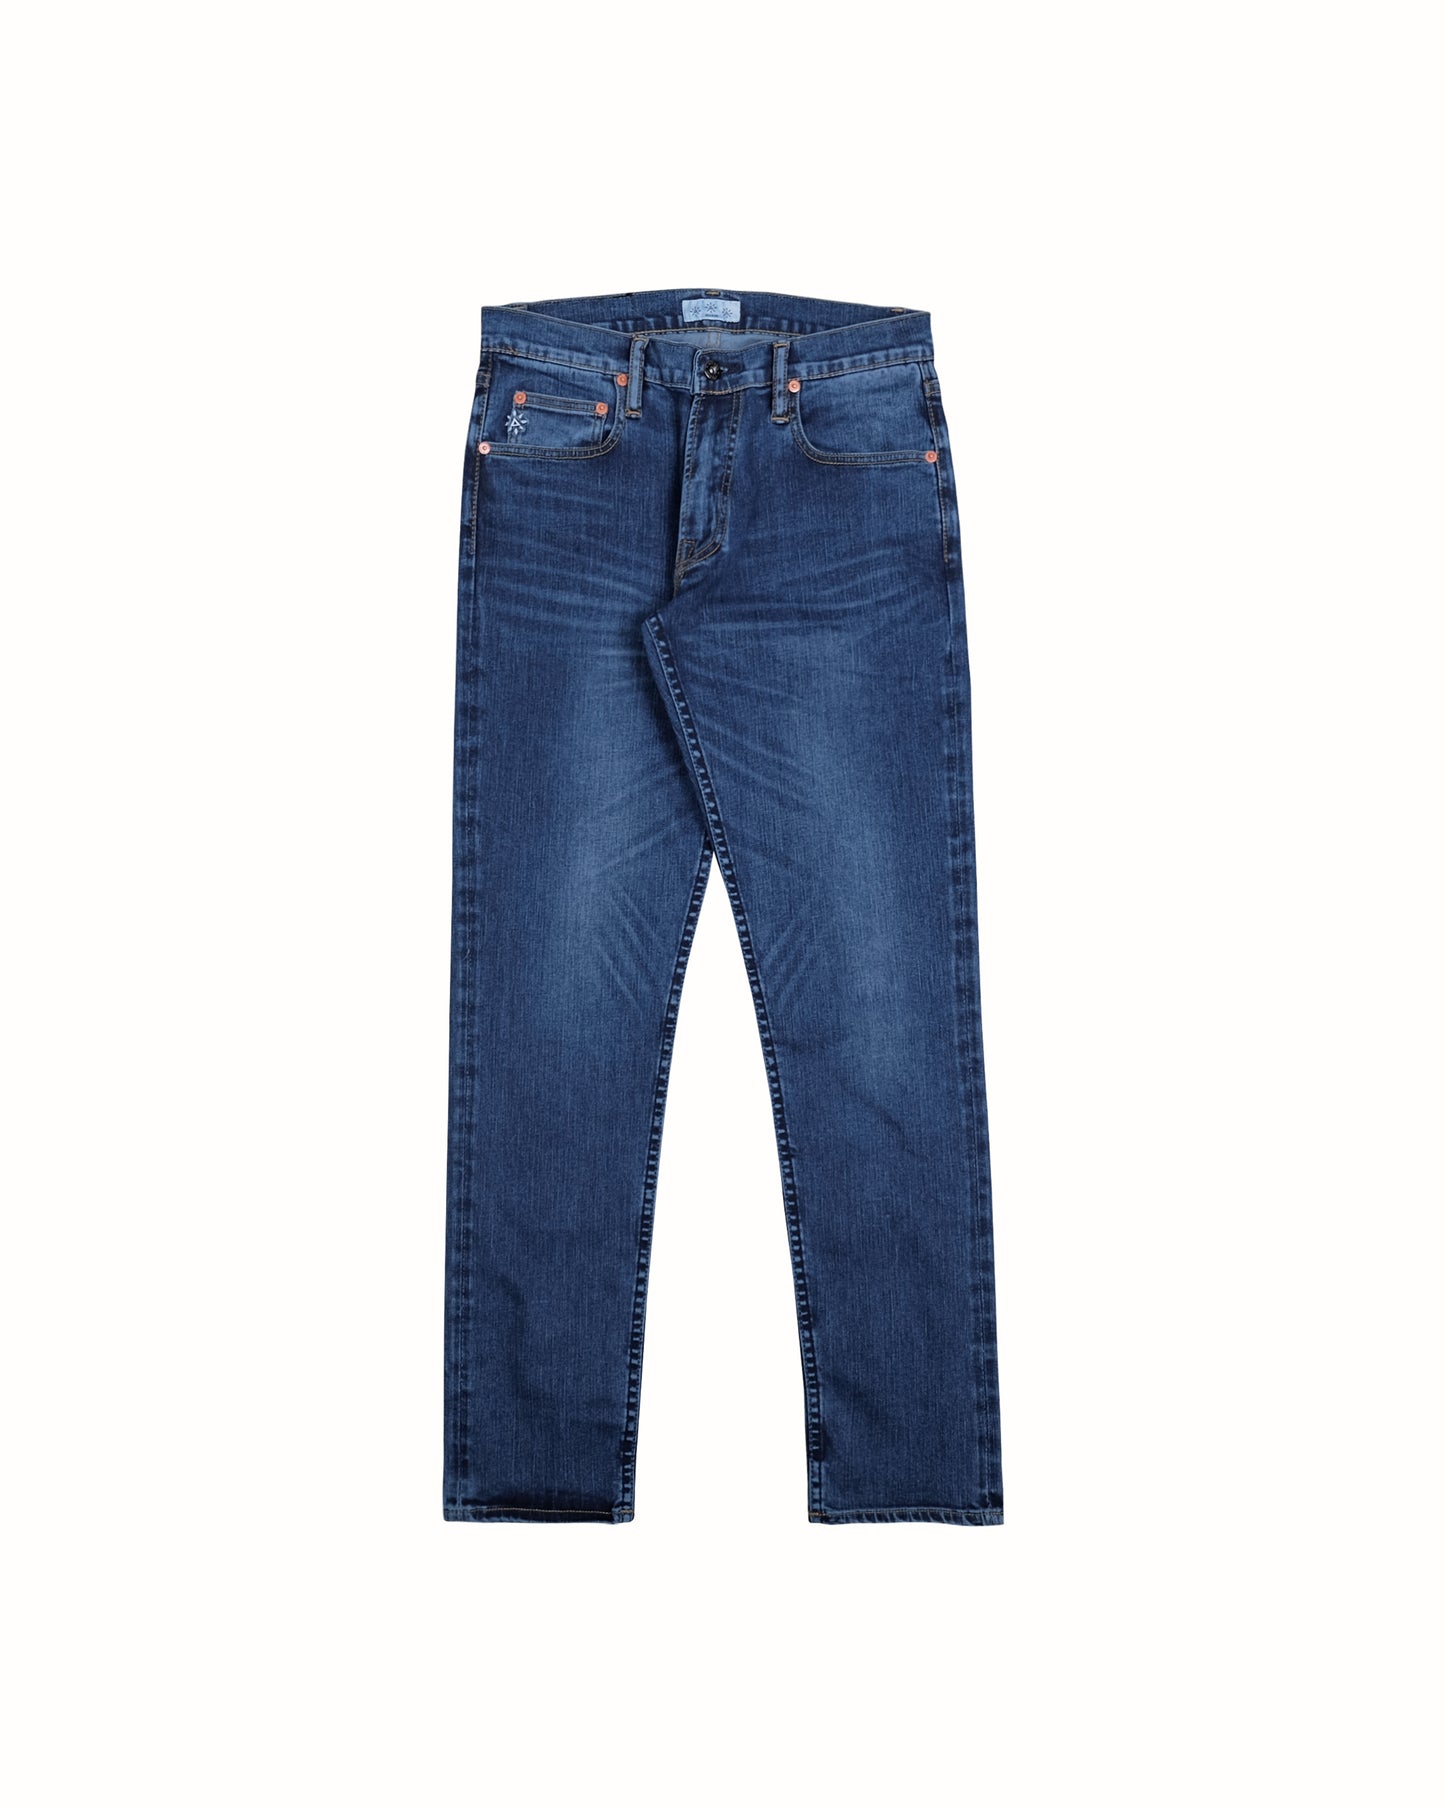 Lacus Prewashed Jeans - Badjatex